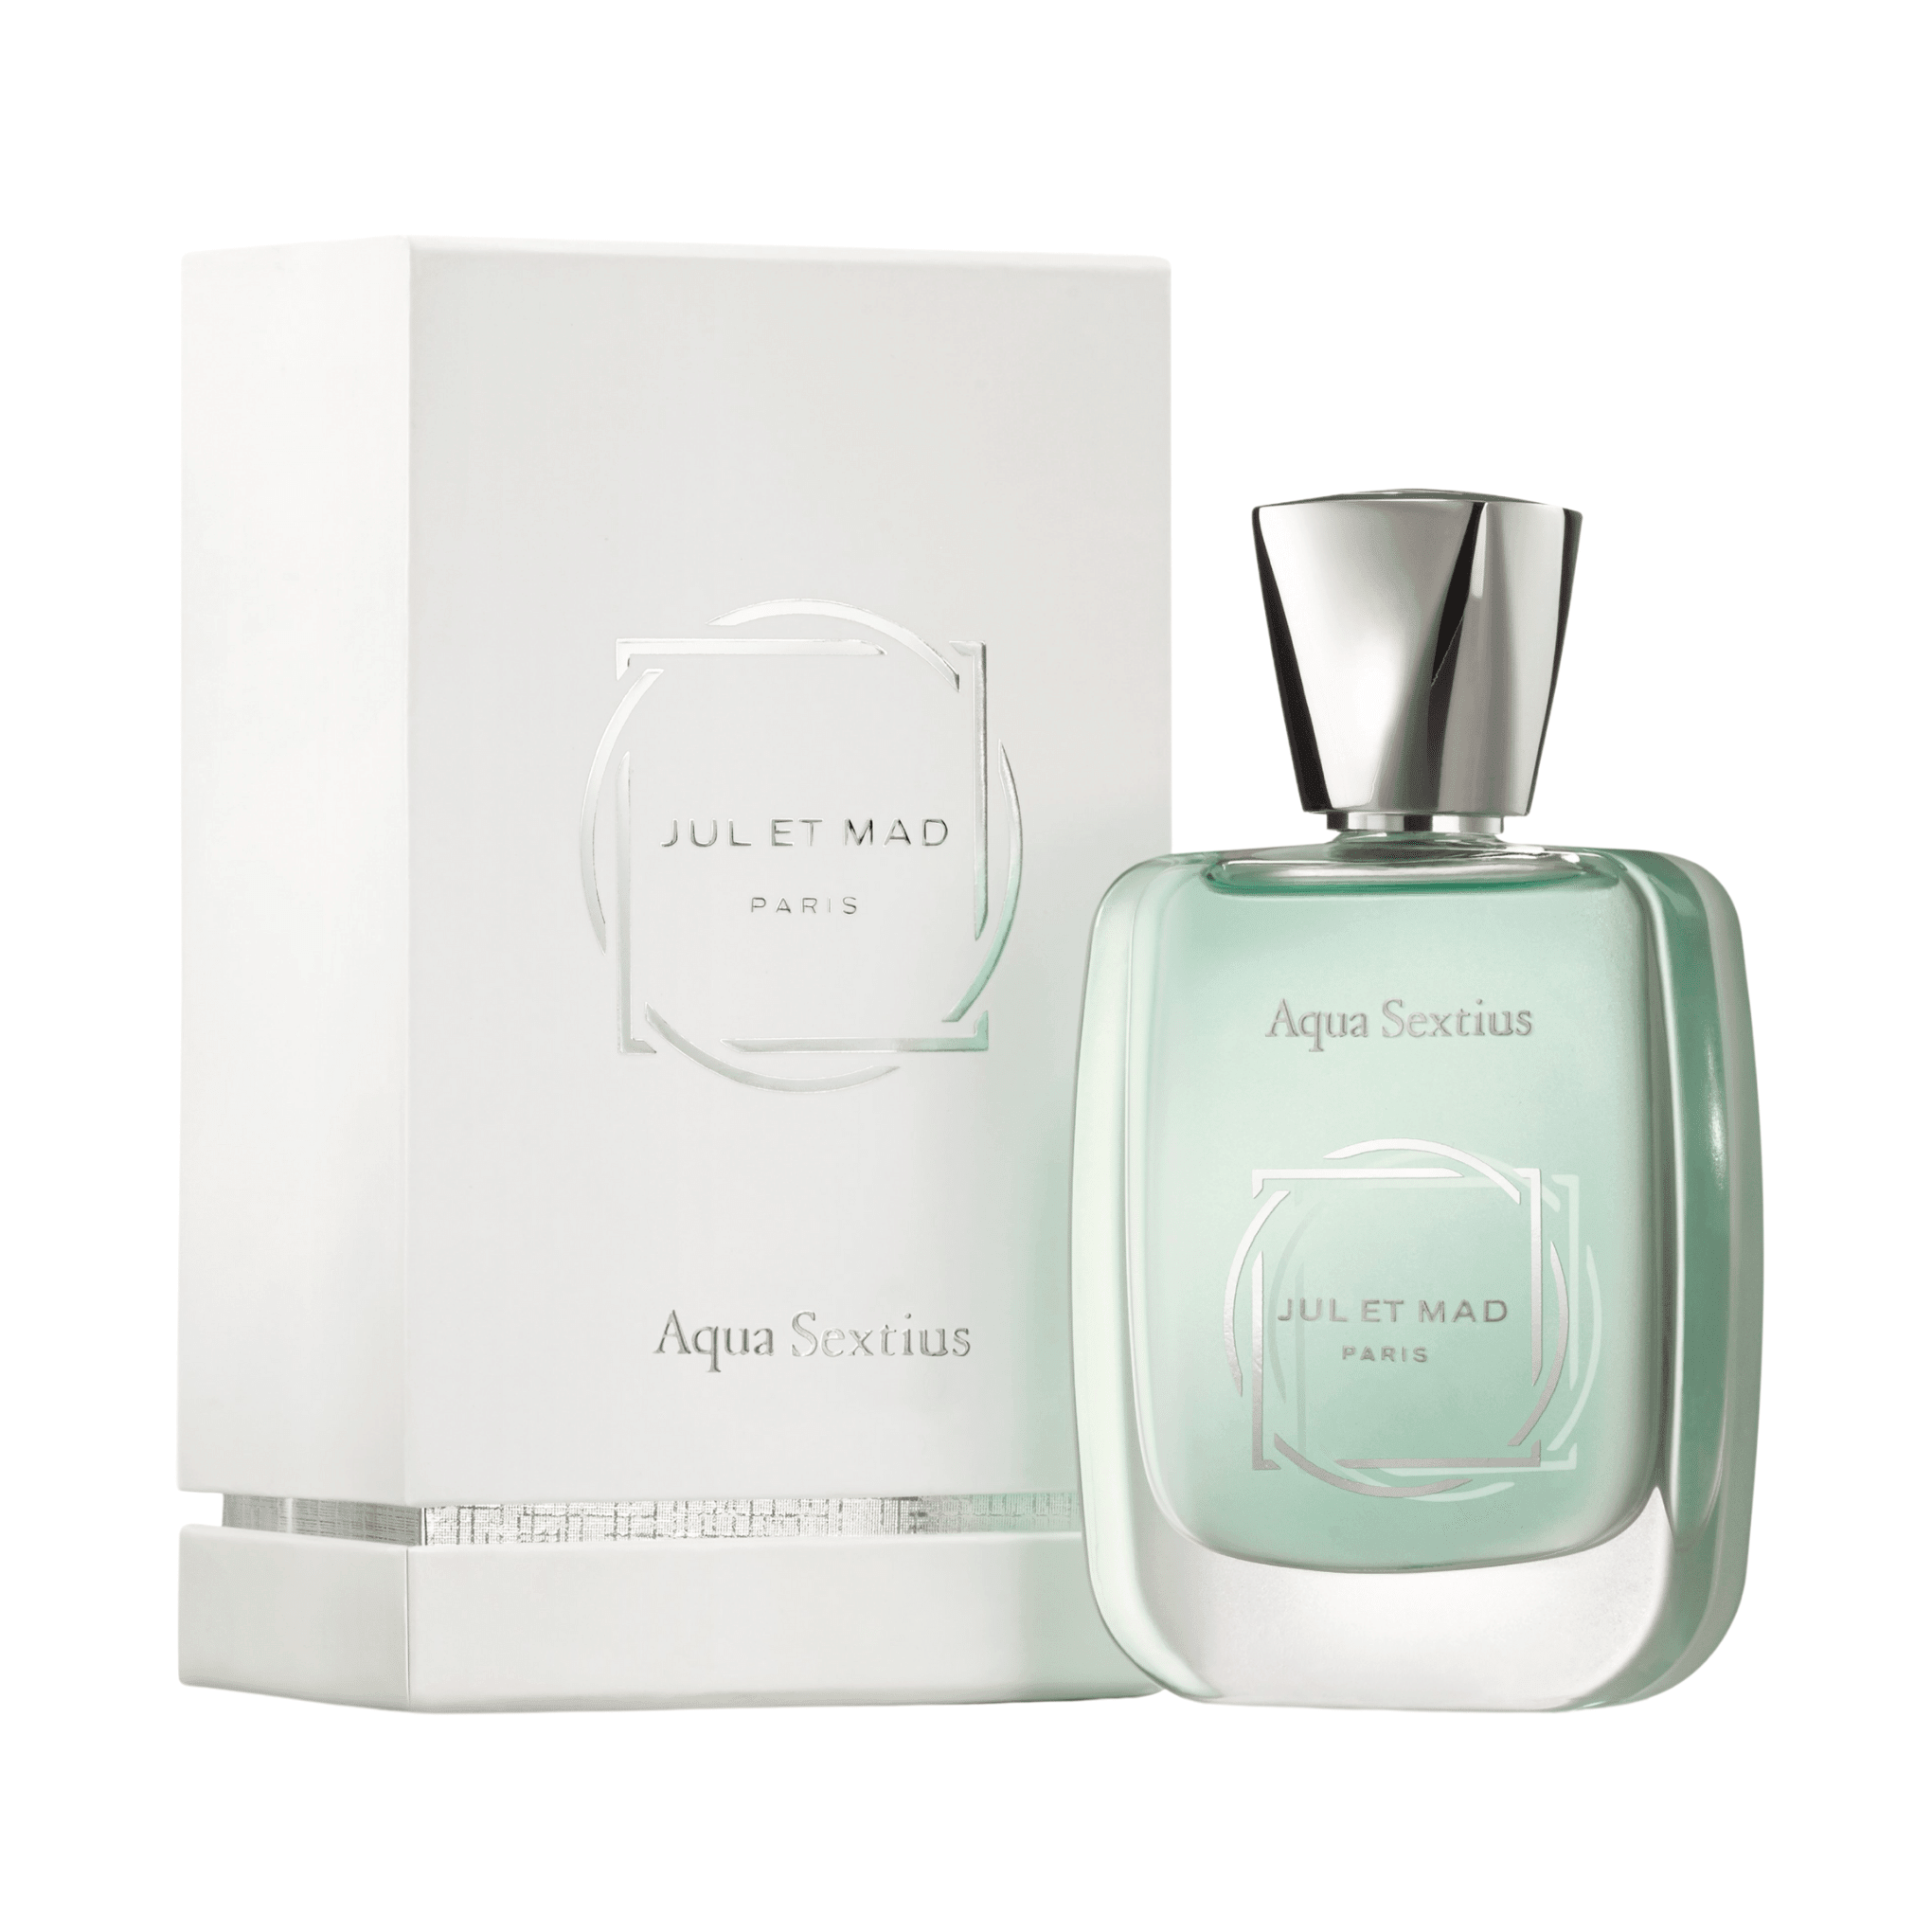 Aqua Sextius perfume